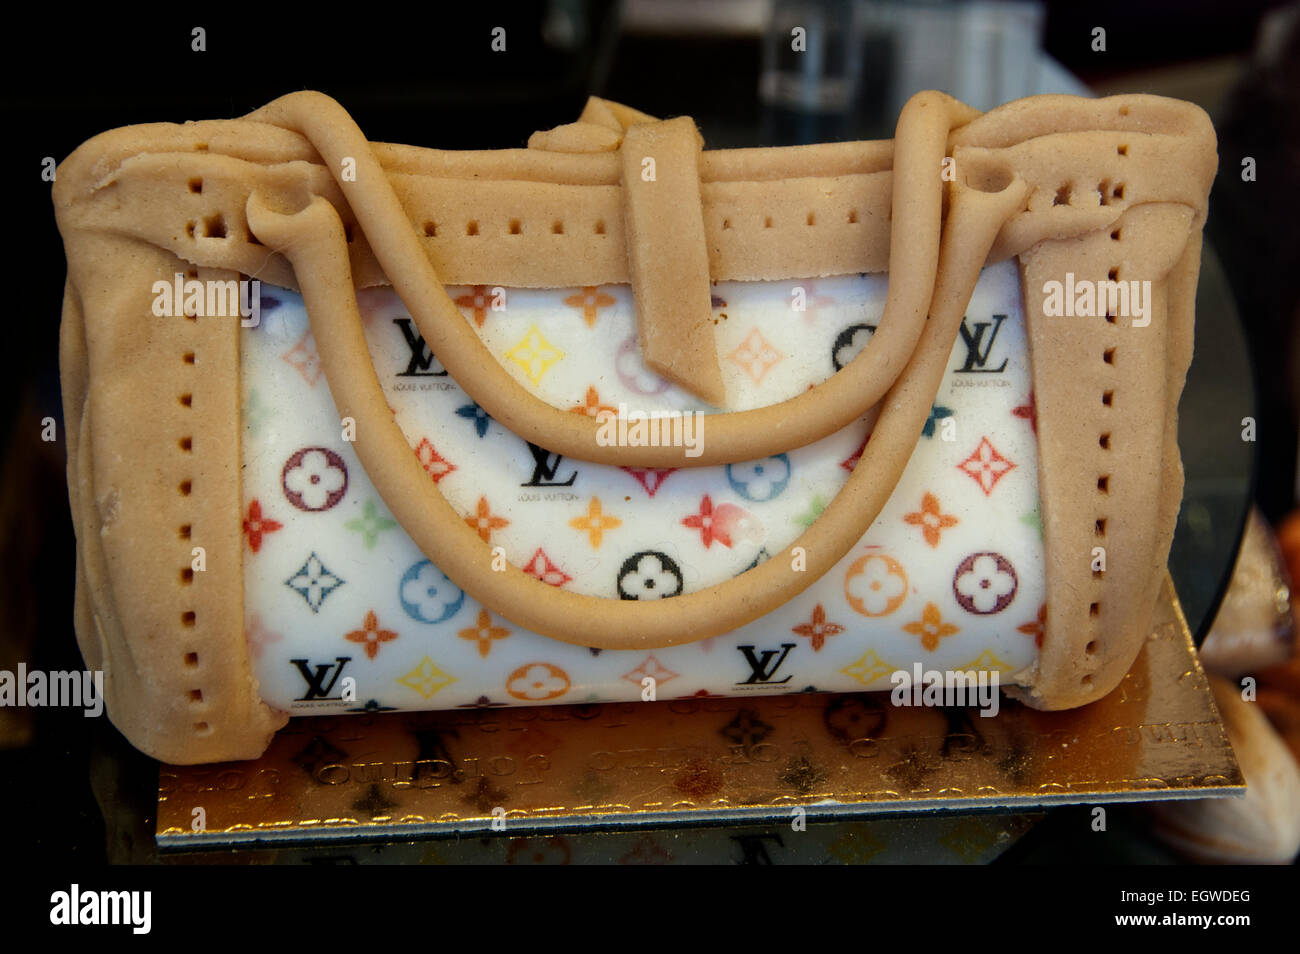 Bag Handbag Louis Vuitton Paris Chocolate Bakery France Stock